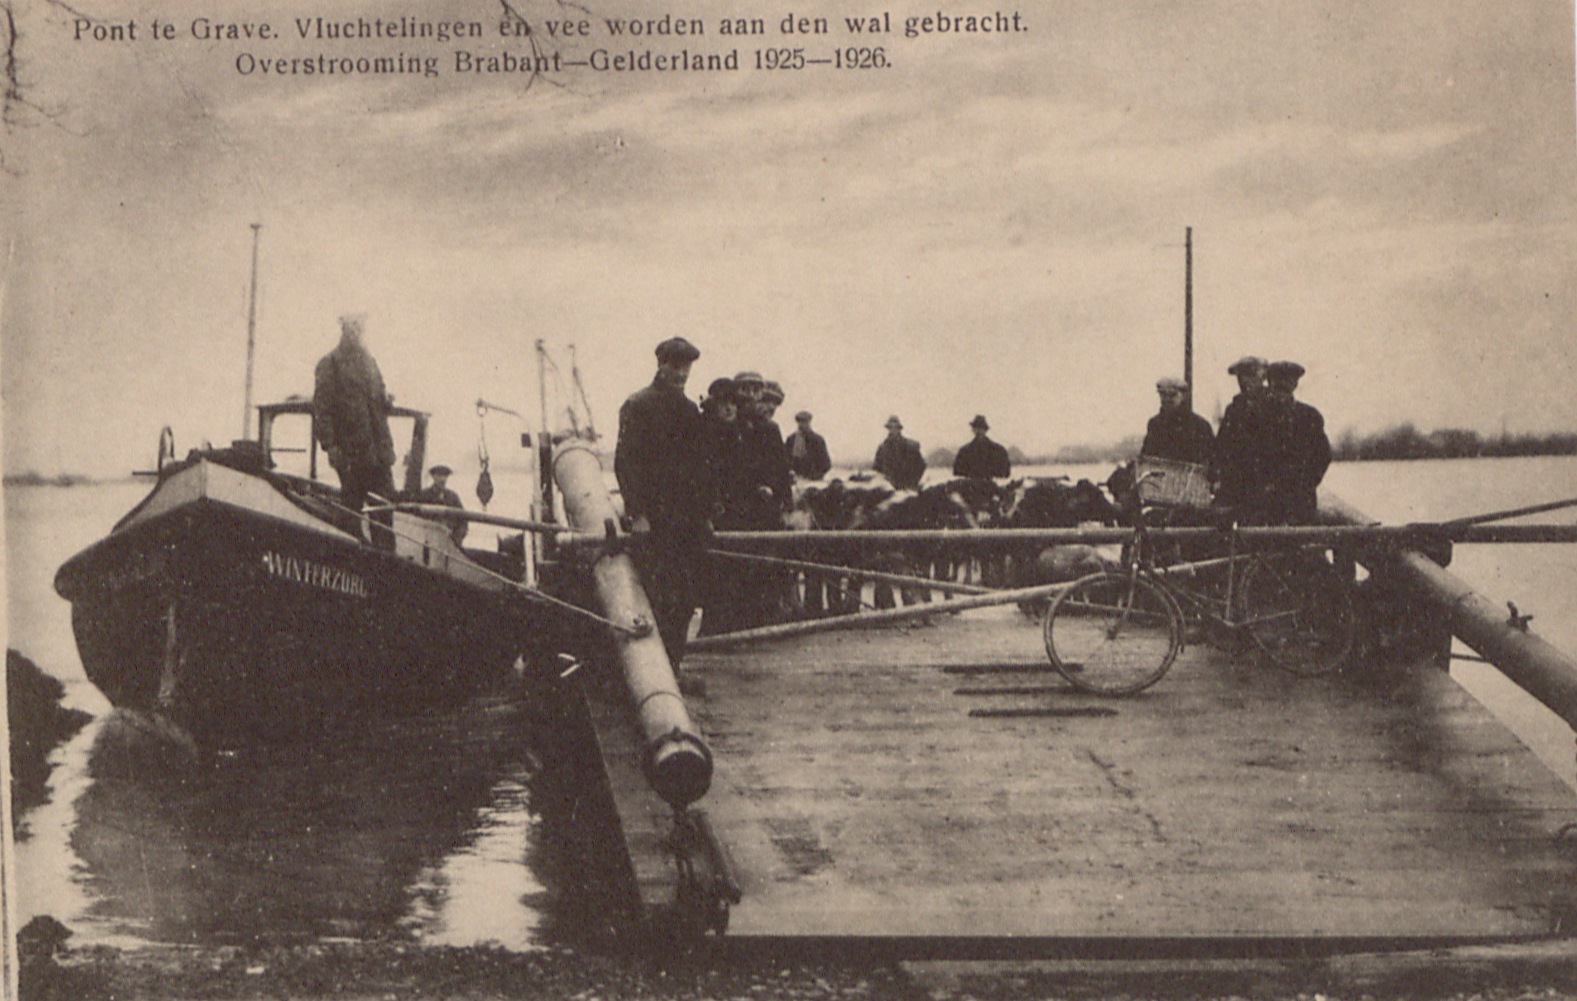 De pont 'Winterzorg' brengt vluchtelingen en vee in veiligheid bij de watersnood in 1926